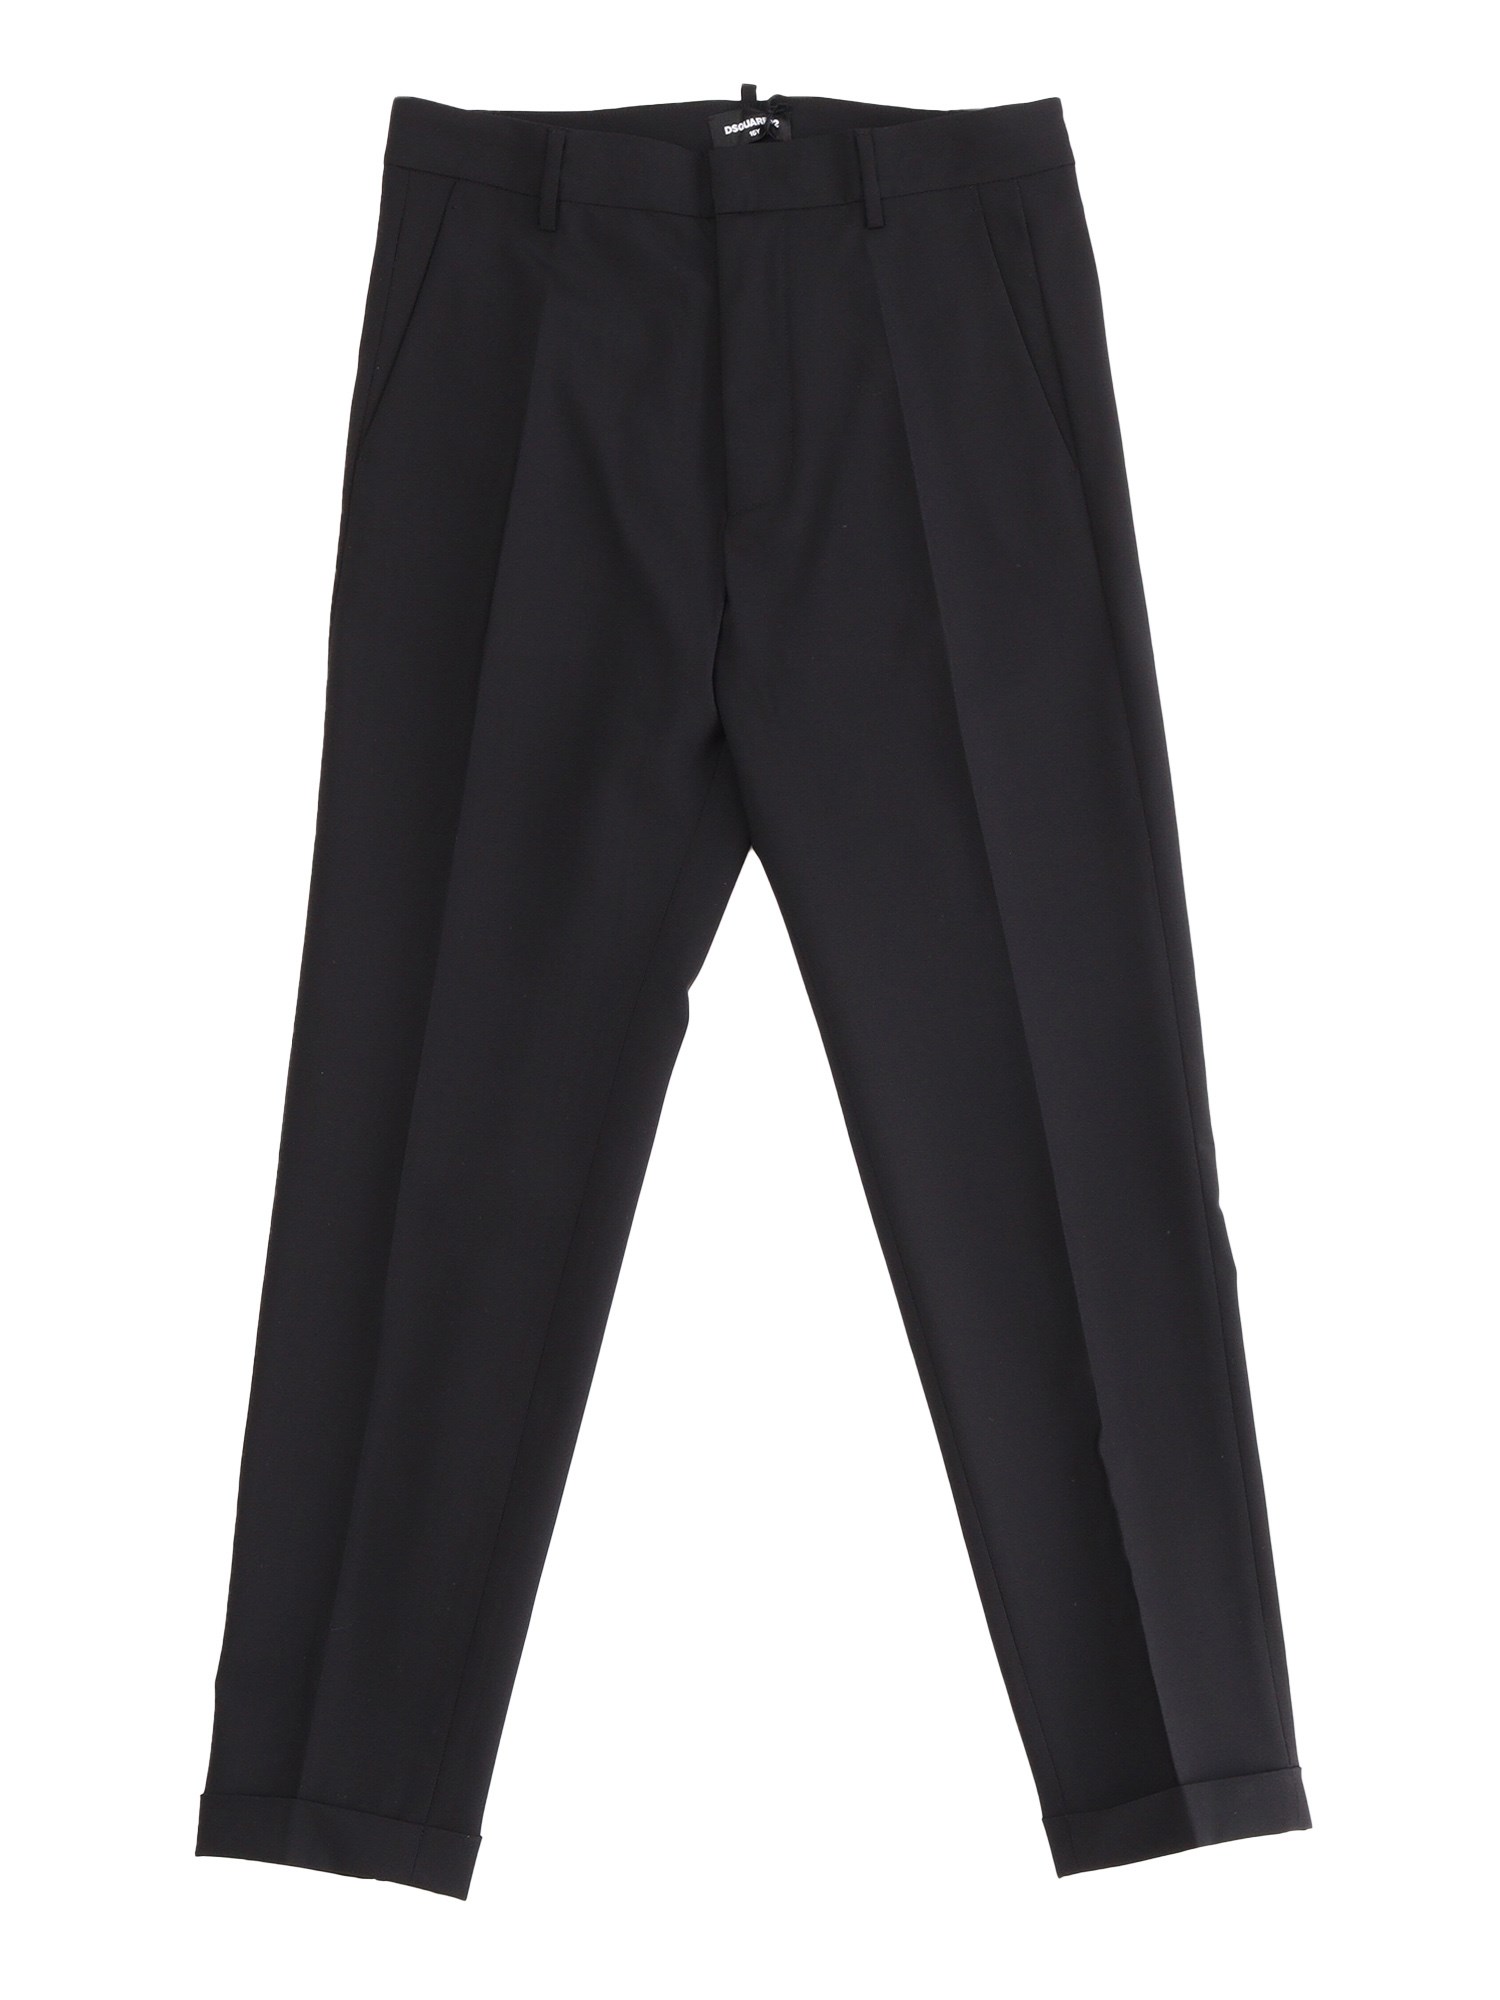 D-squared2 Elegant Black Trousers